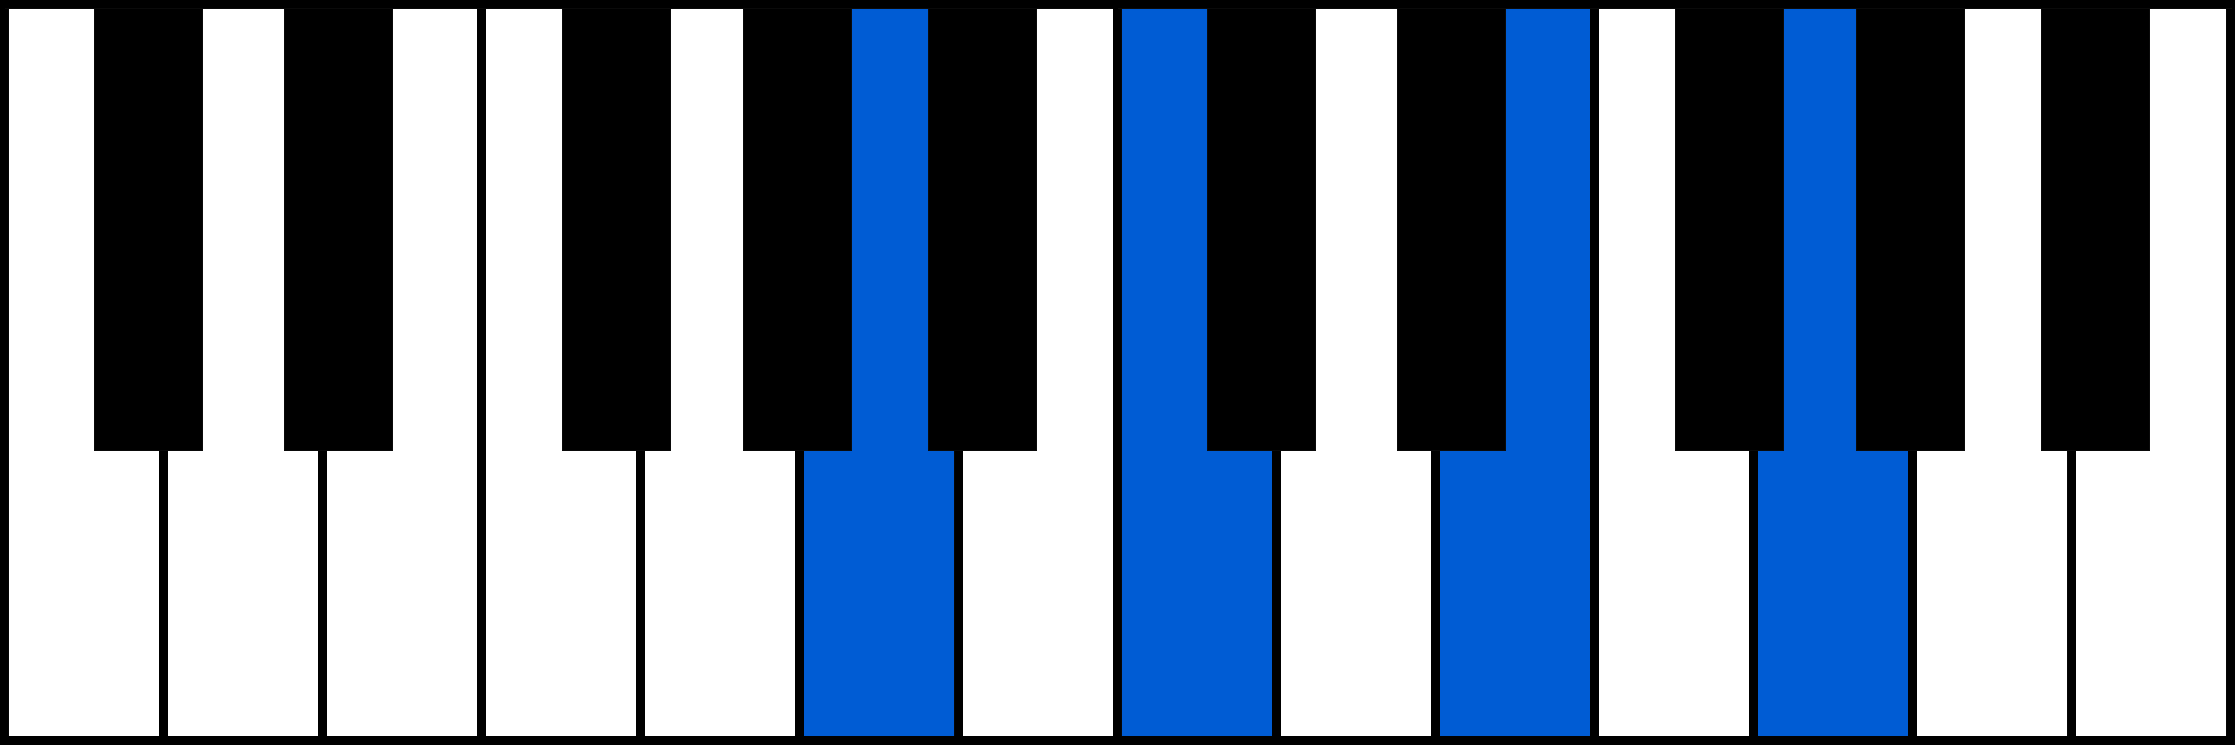 Am7 piano chord